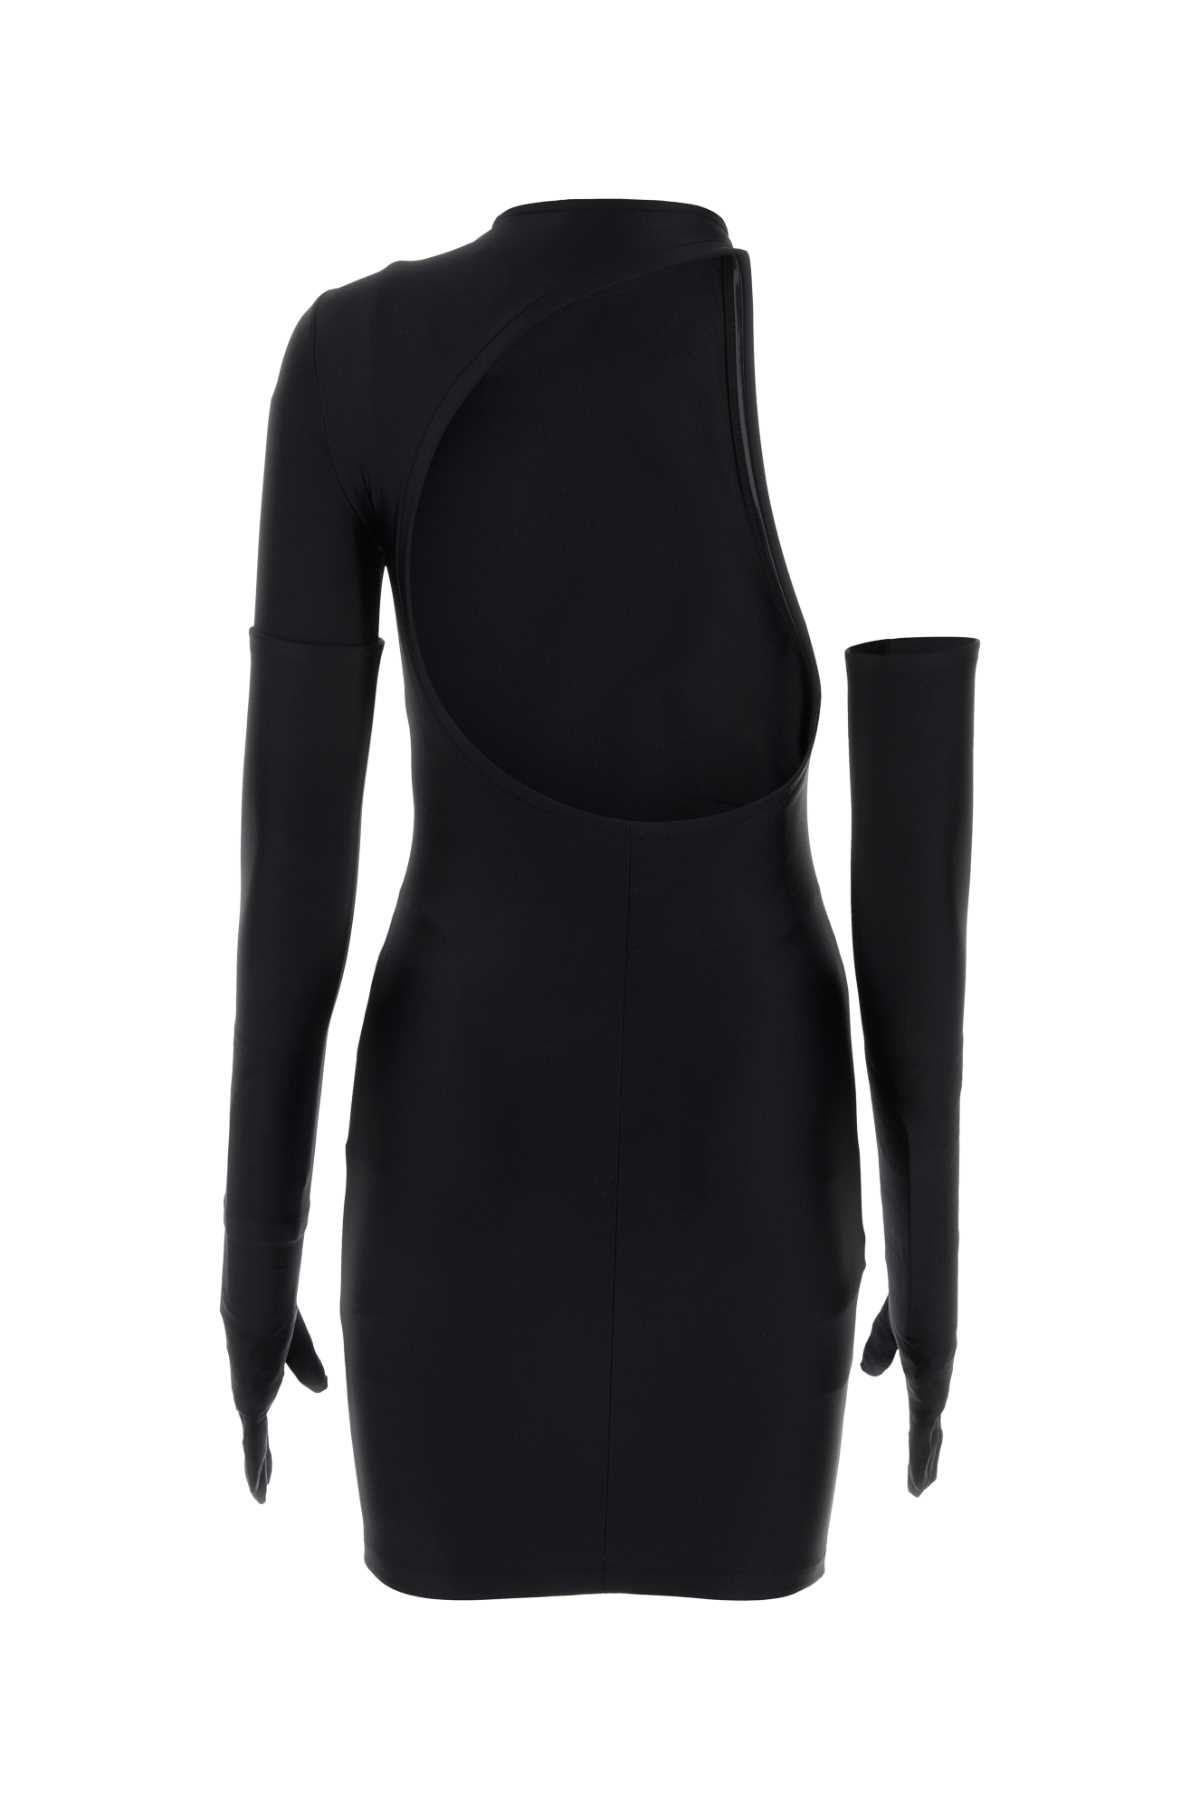 Balenciaga Black Stretch Nylon Mini Dress In 1000